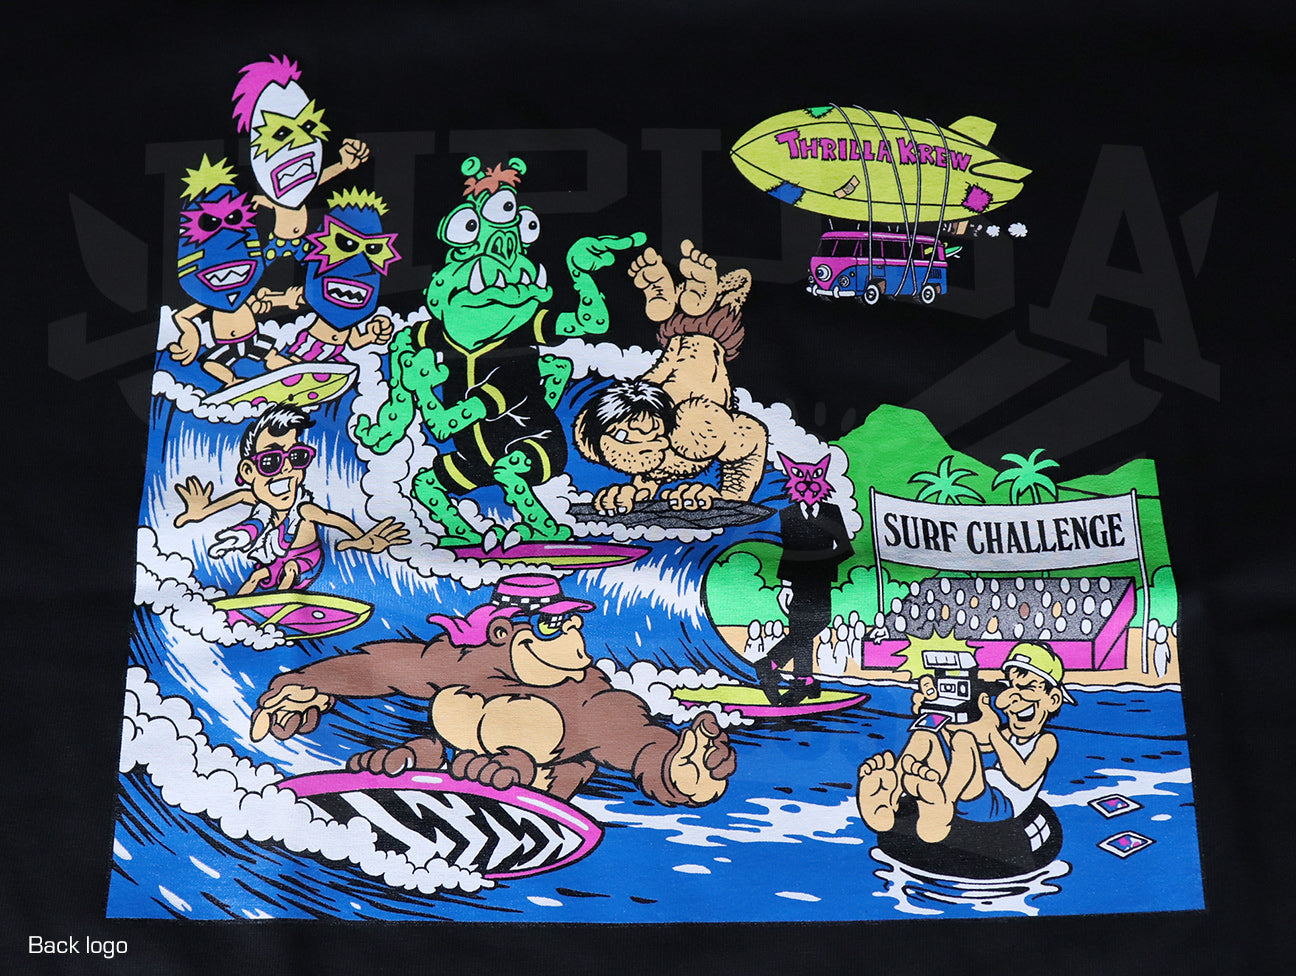 Thrilla Krew Surf Challenge Tee - Black